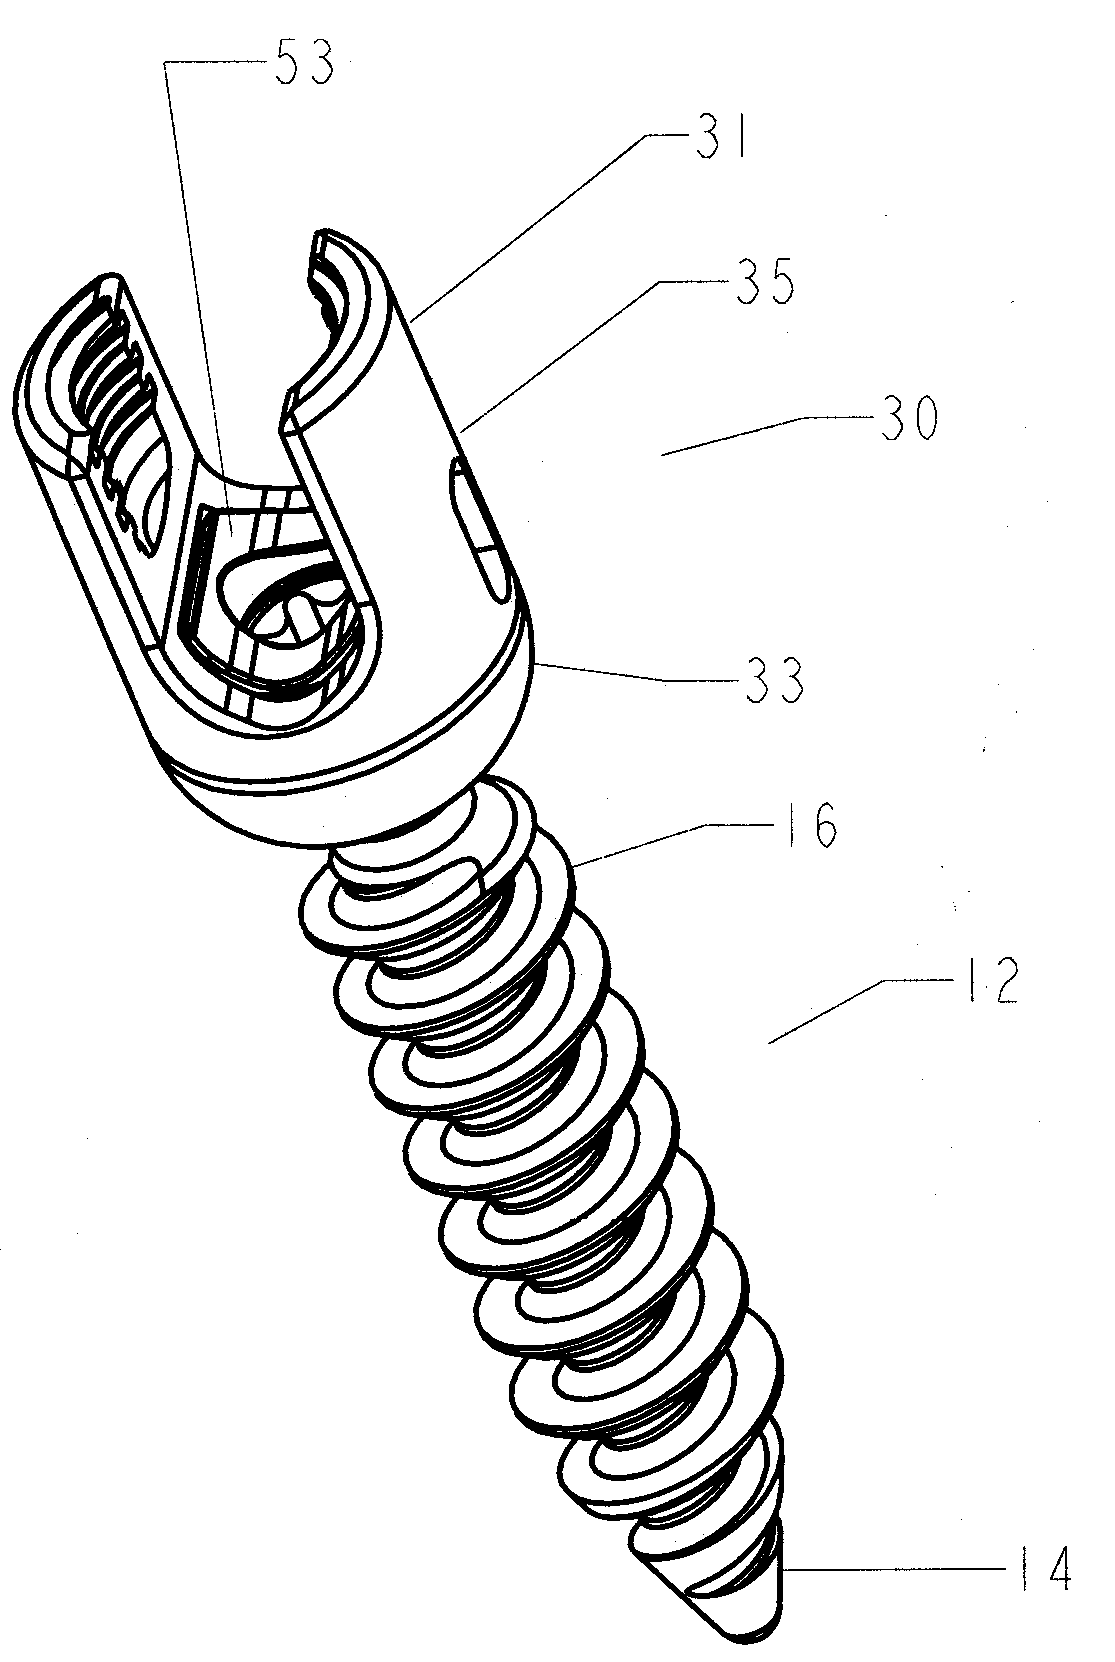 Thread-thru polyaxial pedicle screw system